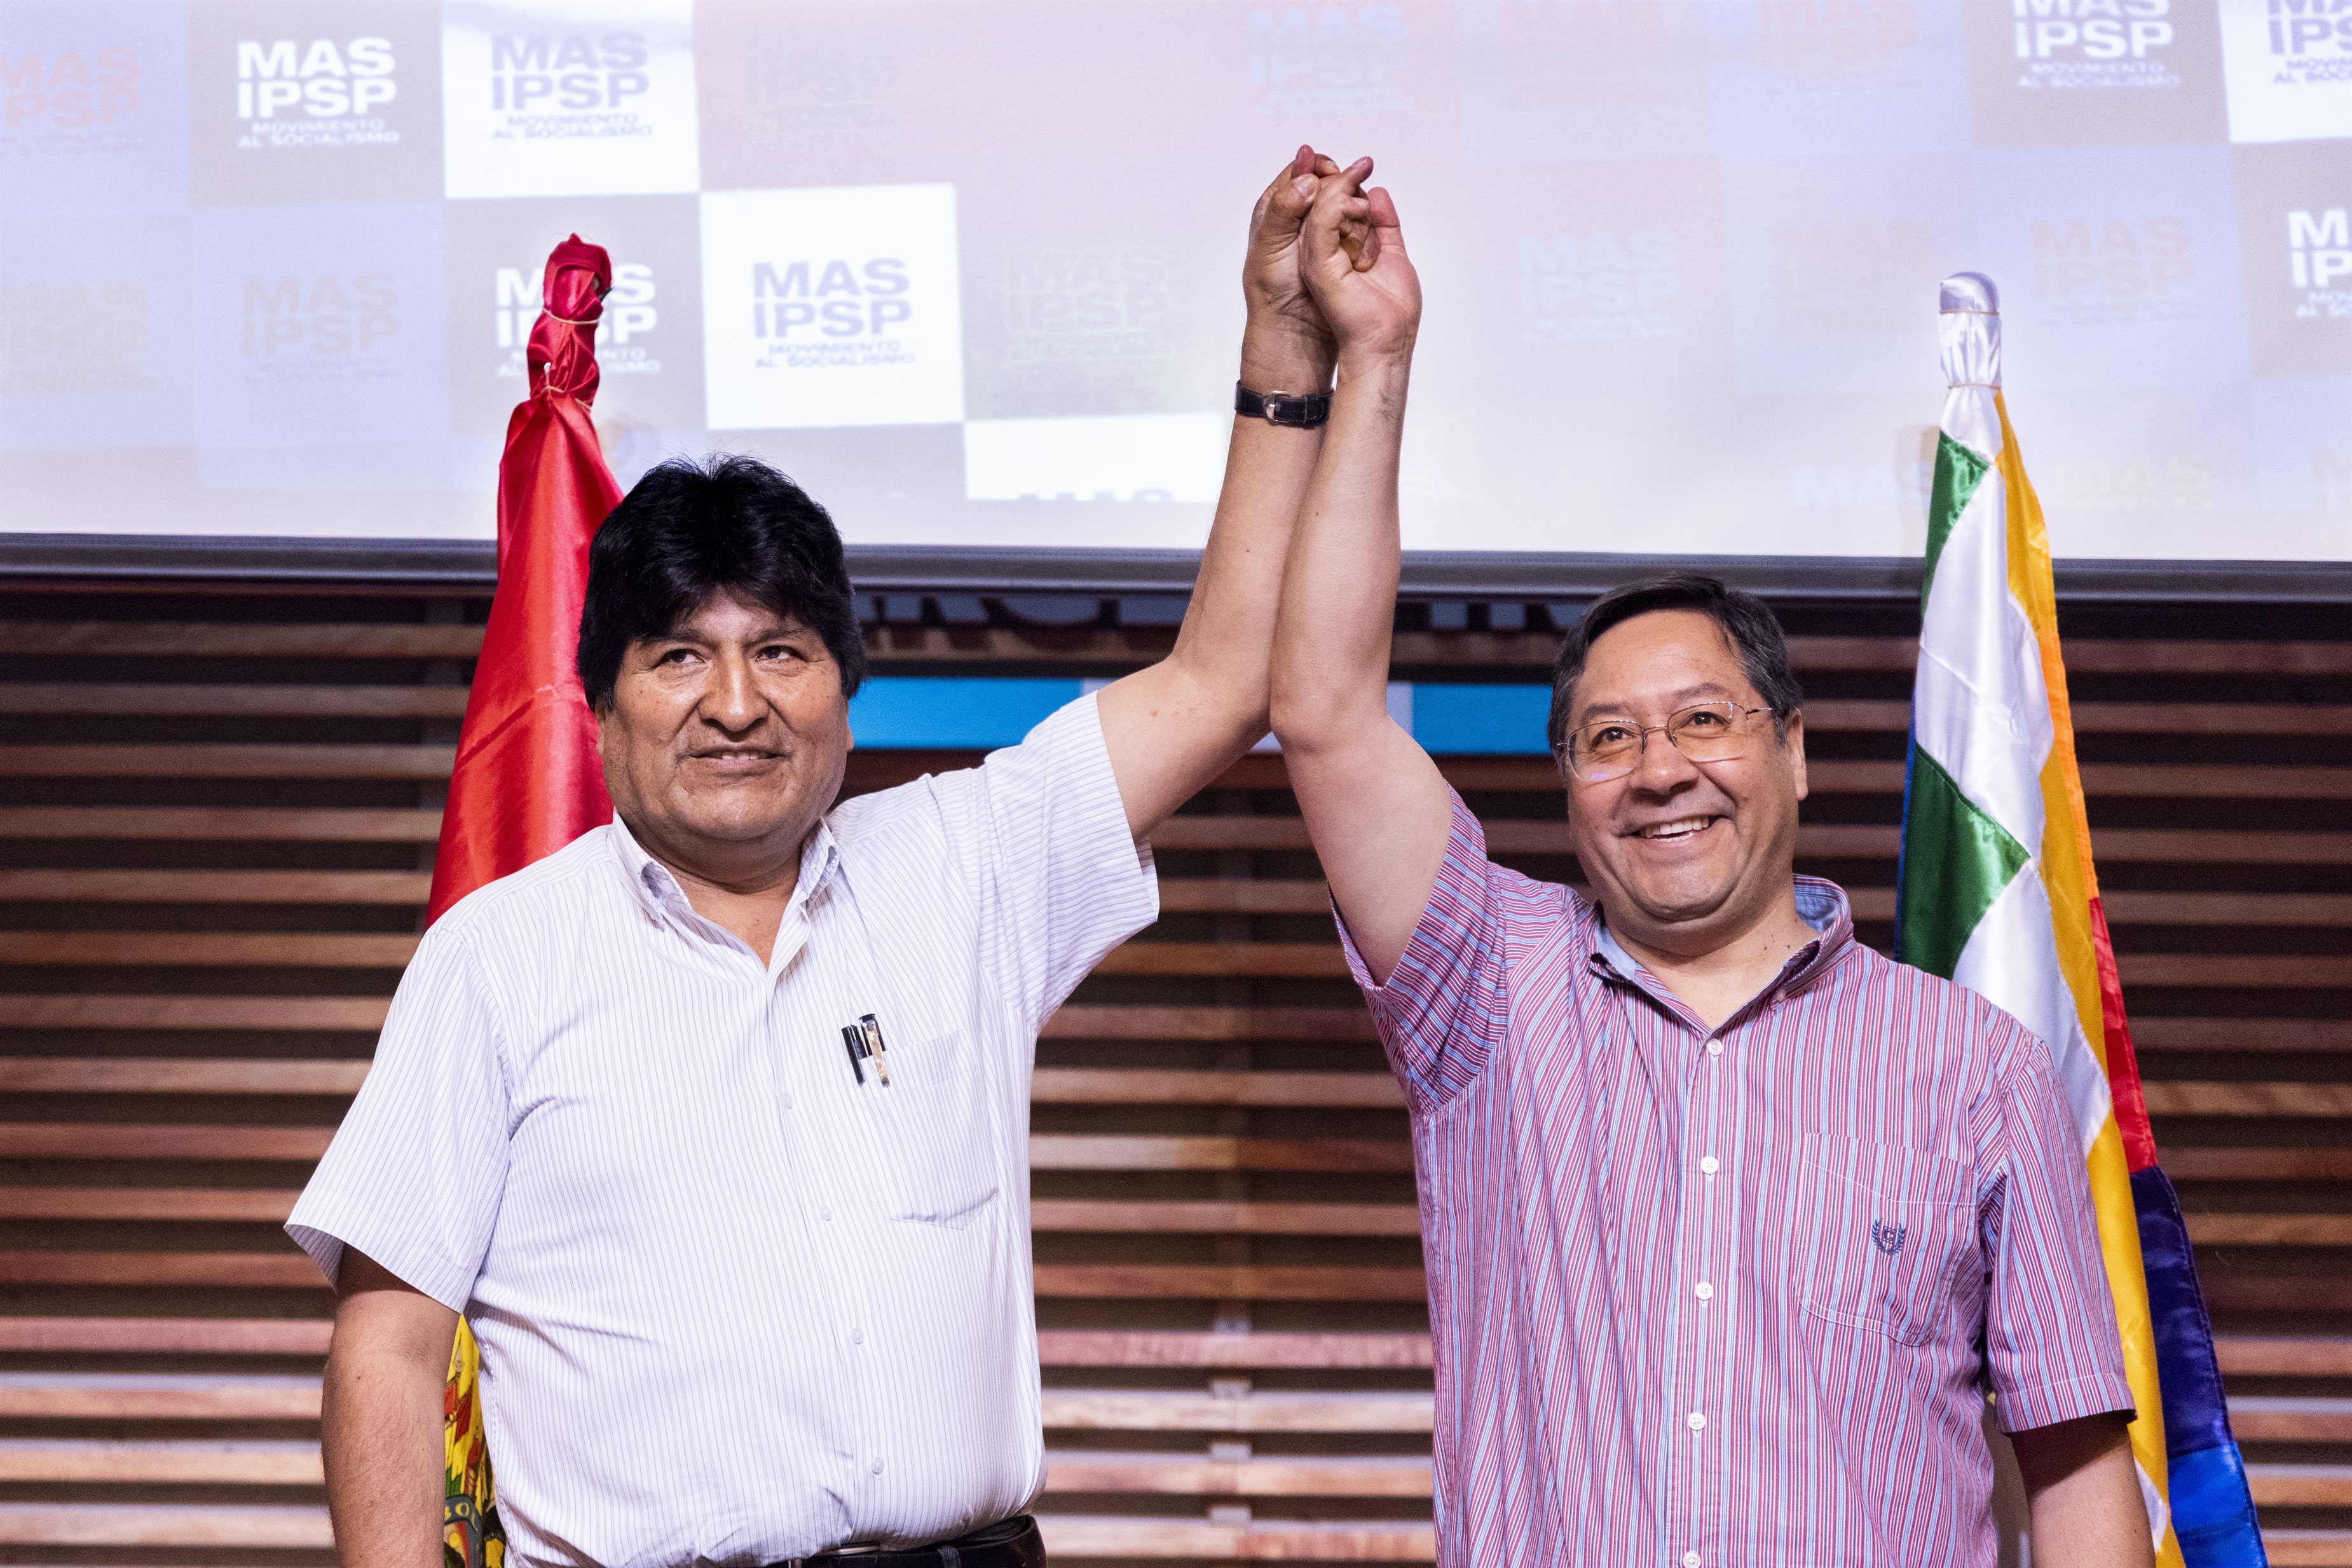 El expresidente de Bolivia Evo Morales y el candidato del MAS Luis Arce en una foto de enero de 2020 (JULIETA FERRARIO / ZUMA PRESS / CONTACTOPHOTO)
